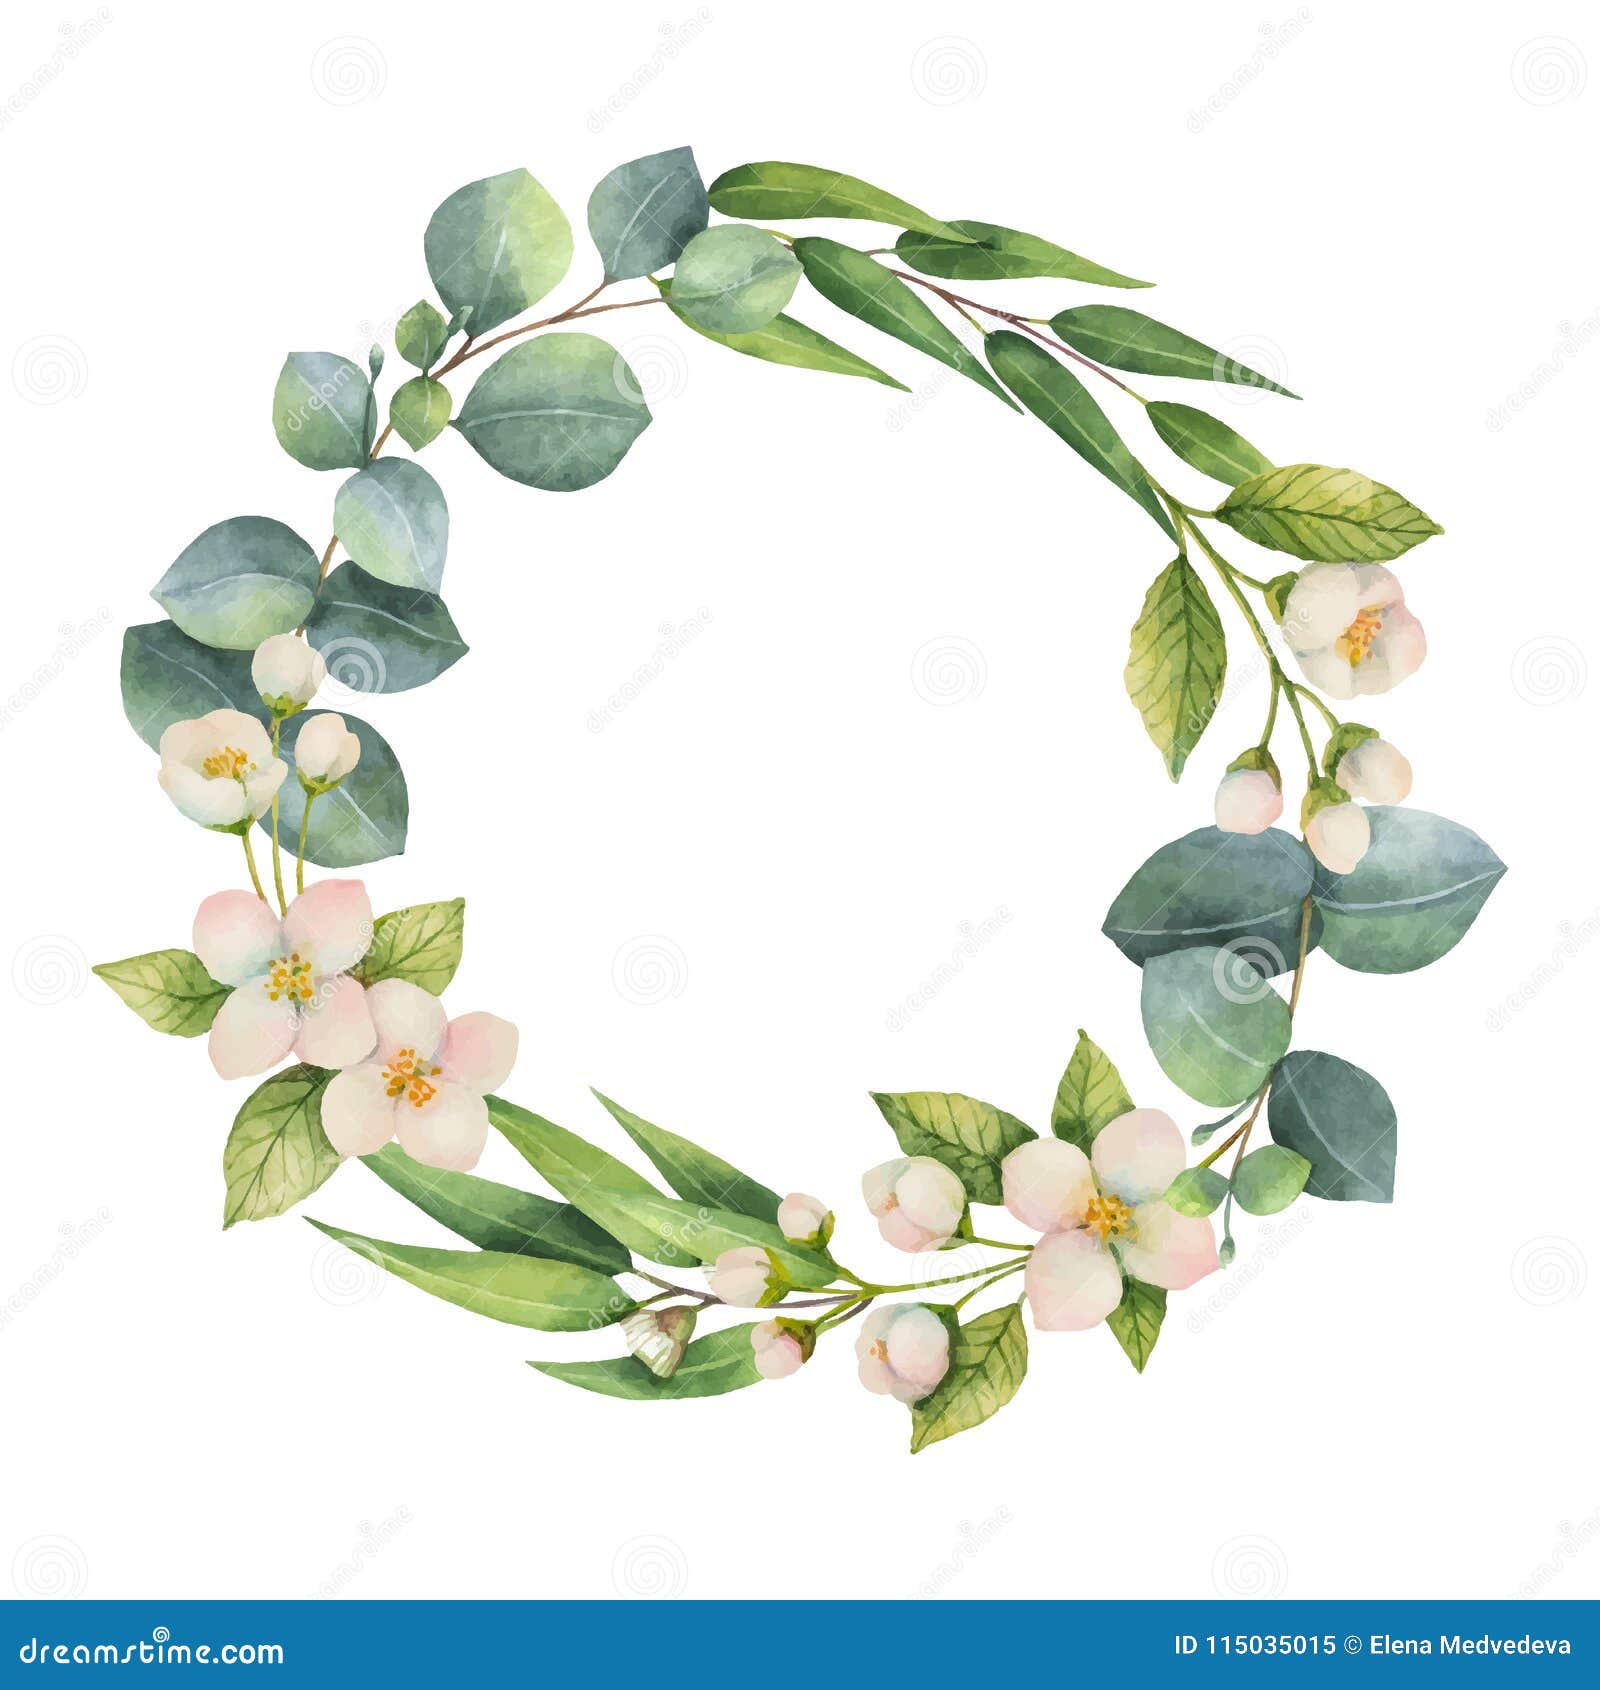 Watercolor vector wreath with green eucalyptus leaves, Jasmine flowers and branches. E Wiosna lub lato kwitniemy dla zaproszenia, ślubu lub kartka z pozdrowieniami,